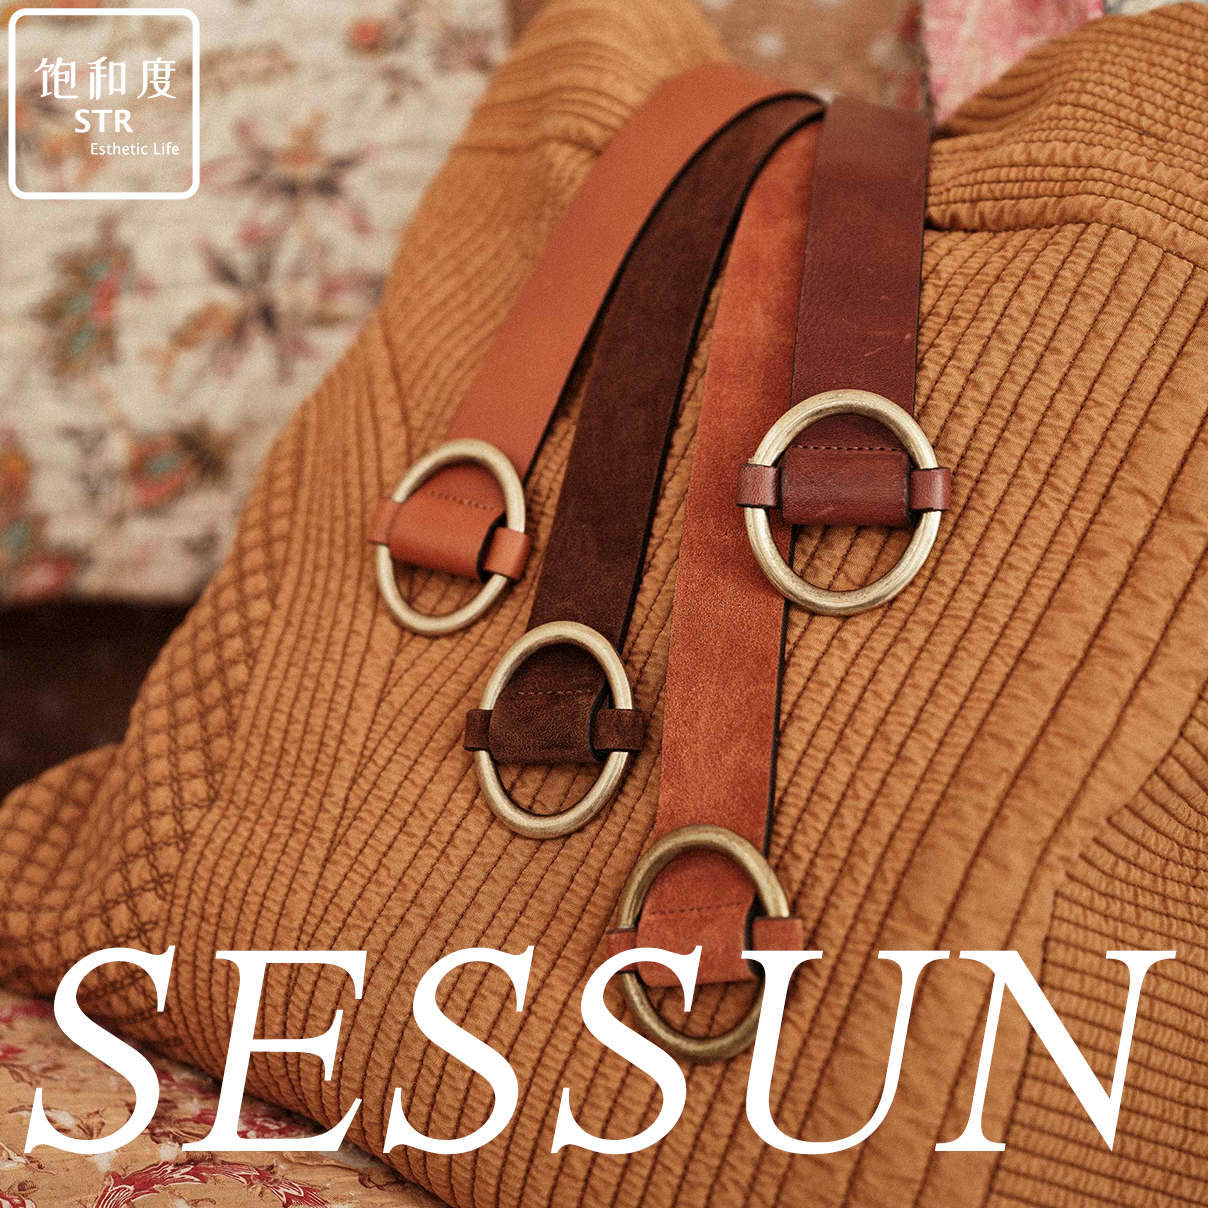 推荐 法国SESSUN设计师品牌 个性棕色时尚休闲简约百搭皮带腰带